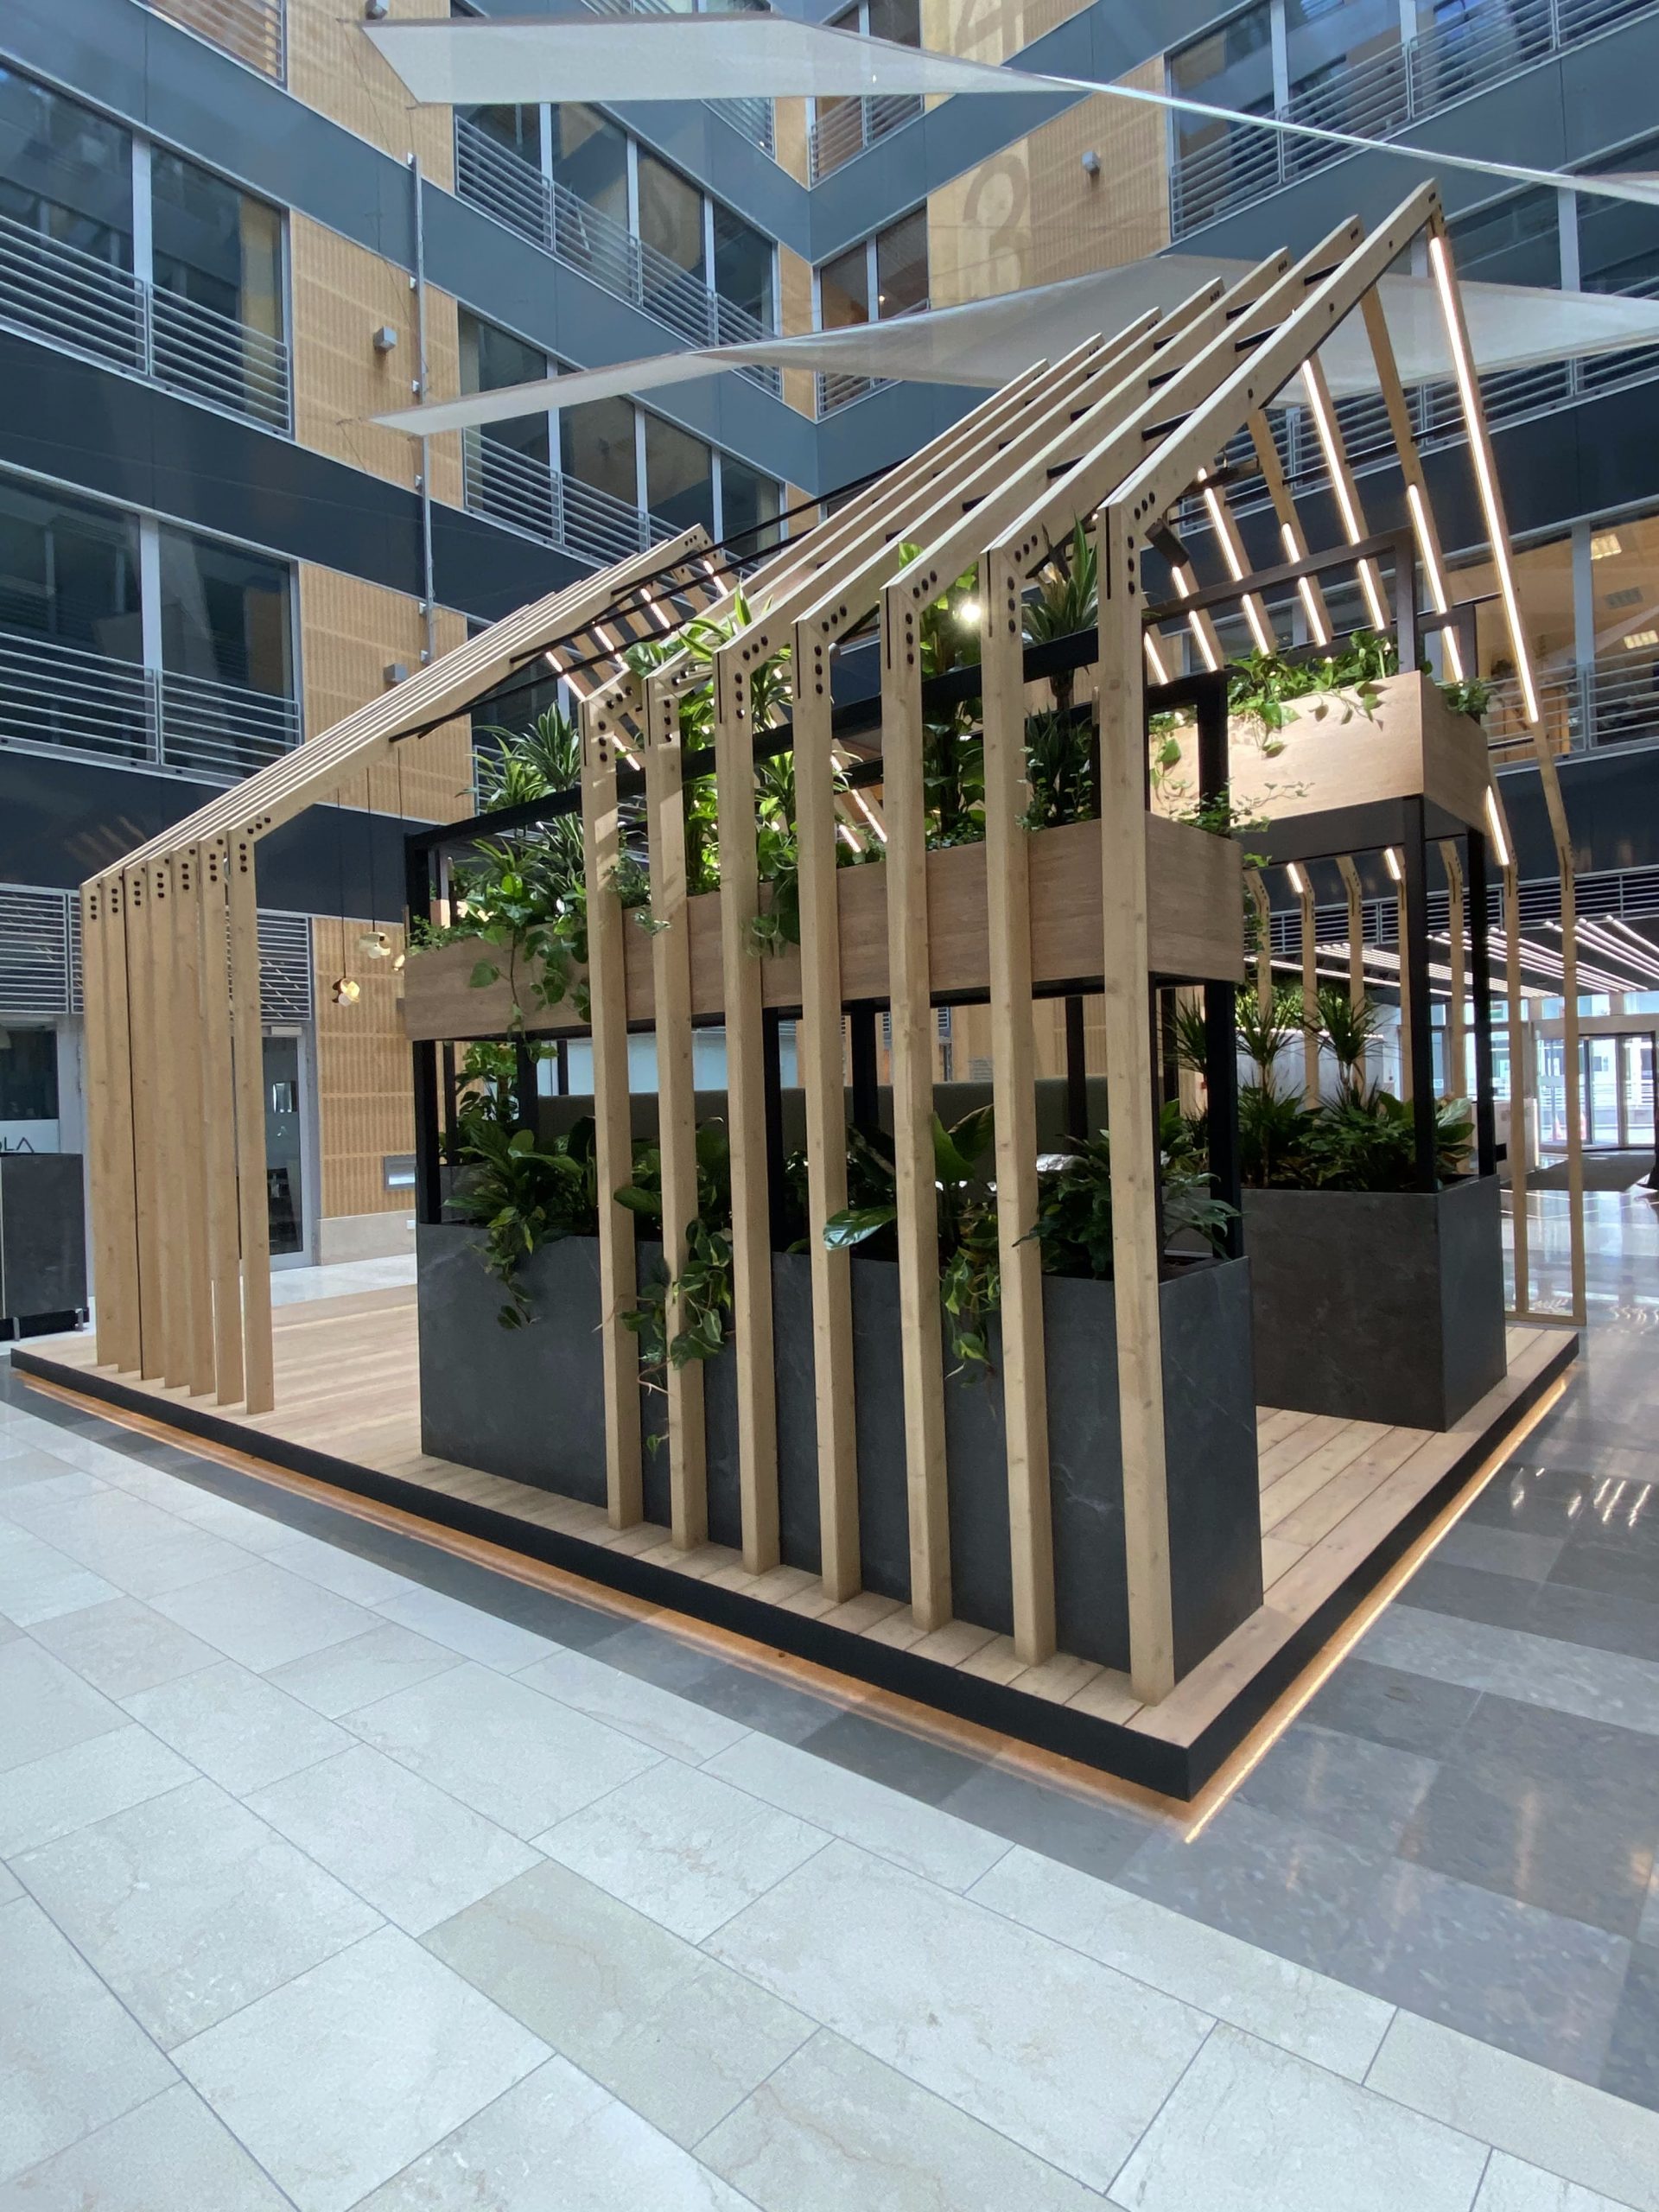 Drewniana konstrukcja z roślinami w budynku biurowym.